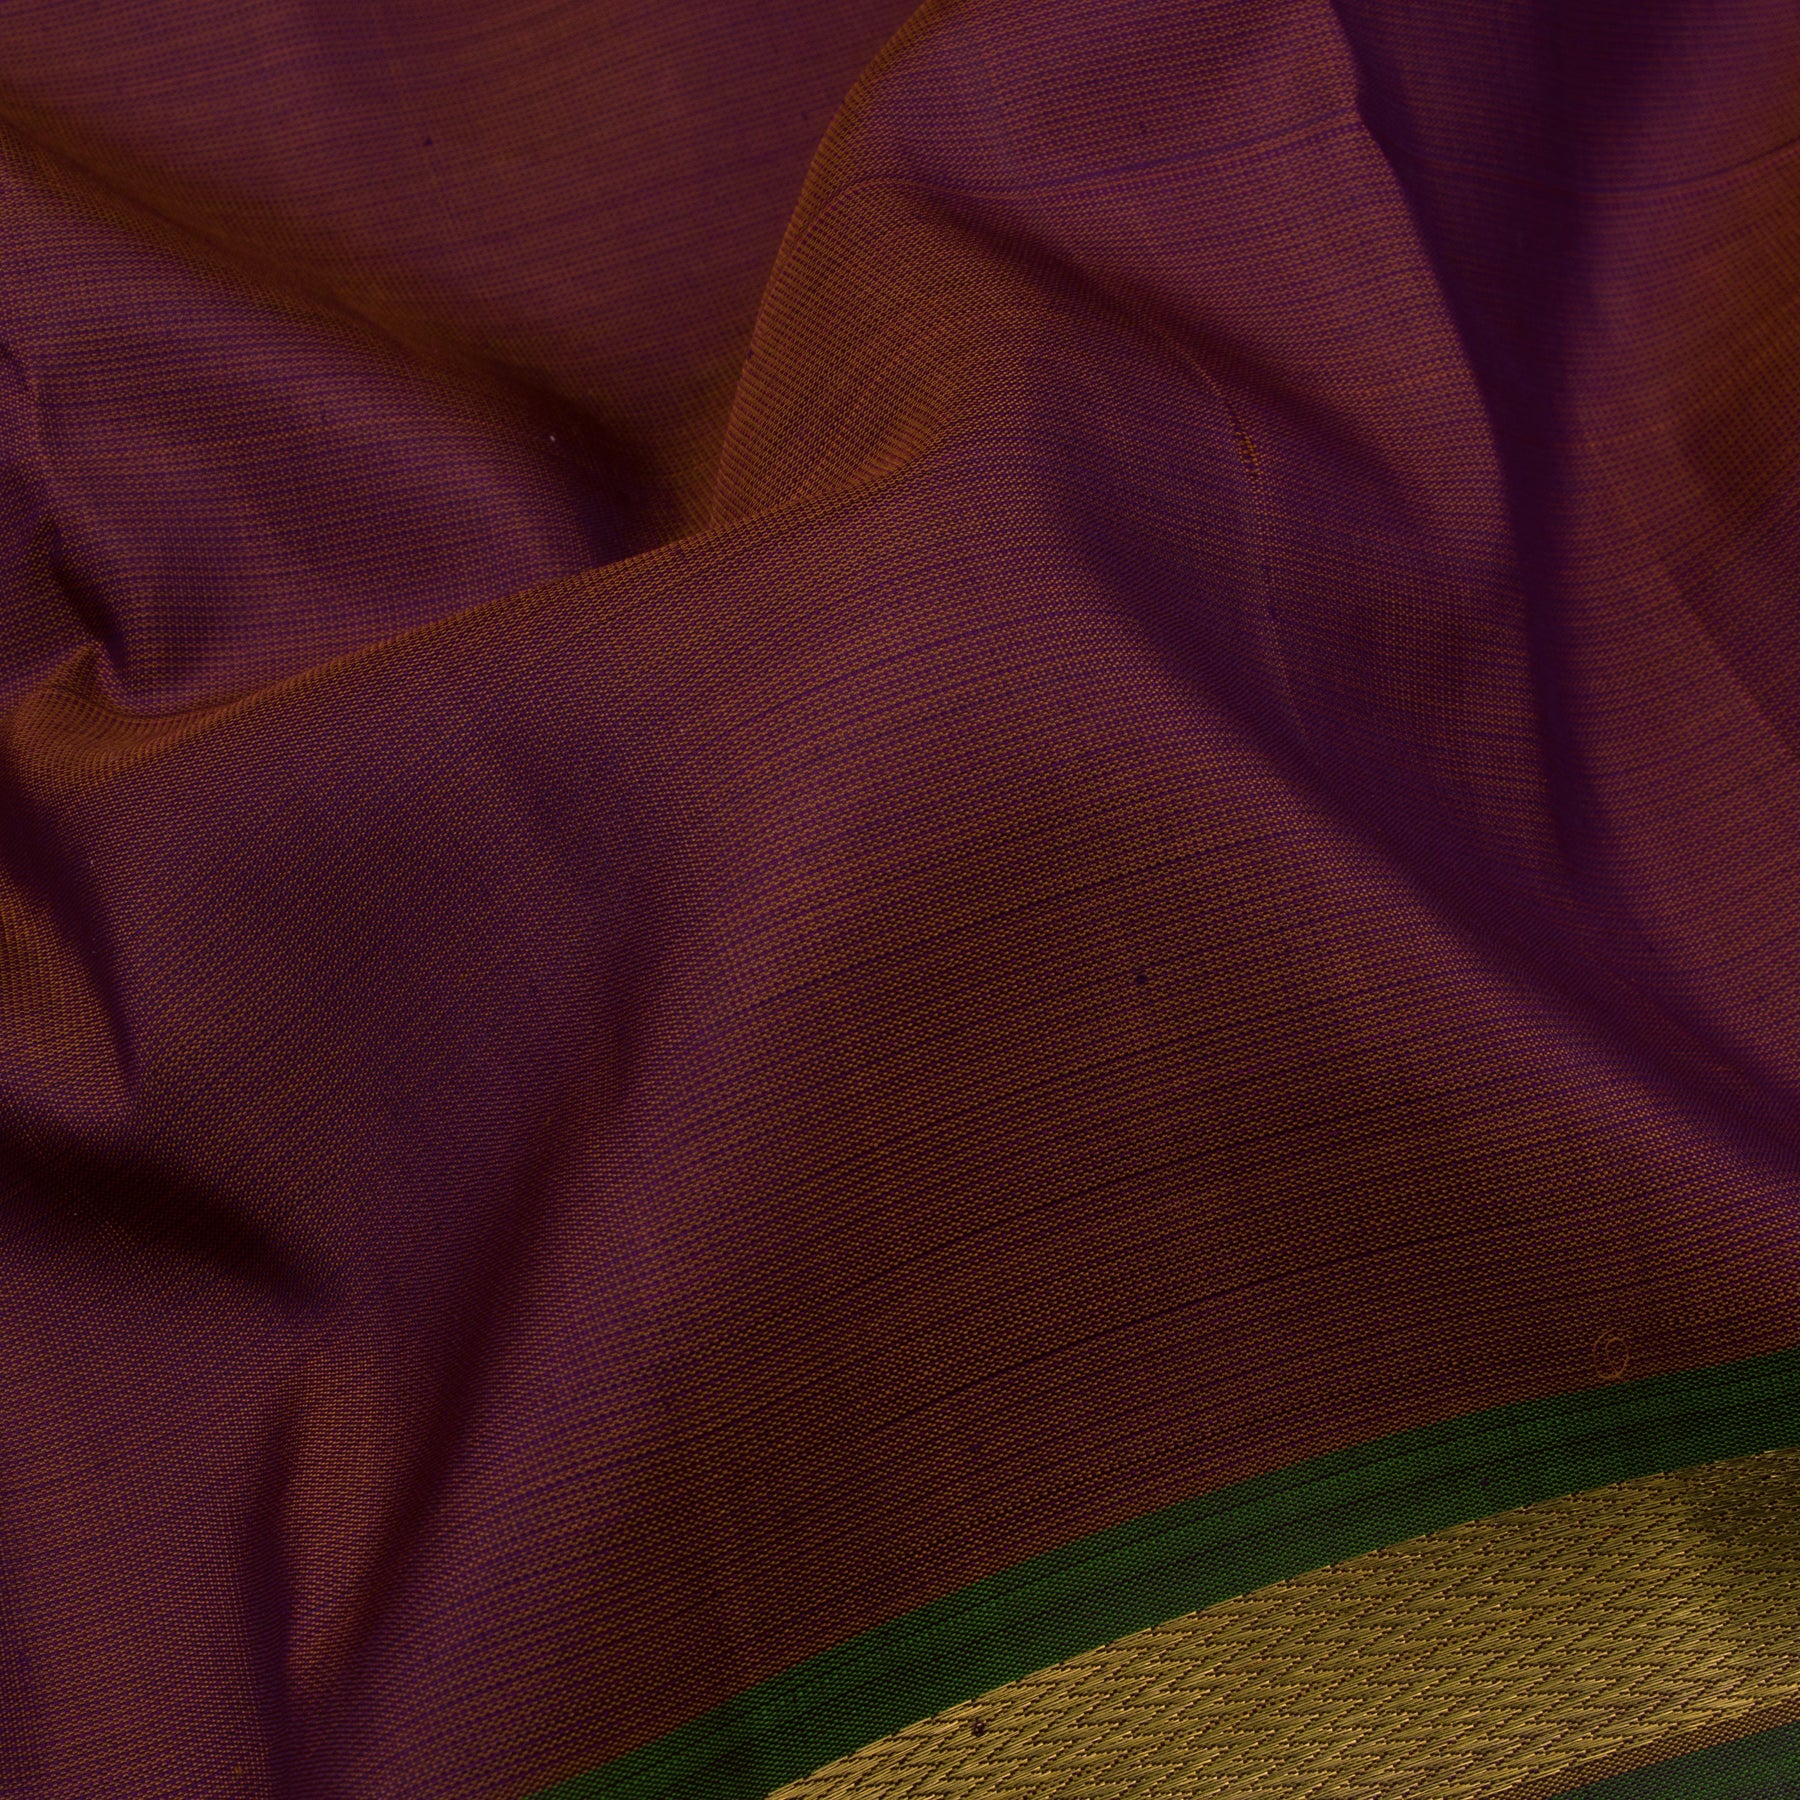 Kanakavalli Kanjivaram Silk Sari 23-611-HS001-01536 - Fabric View